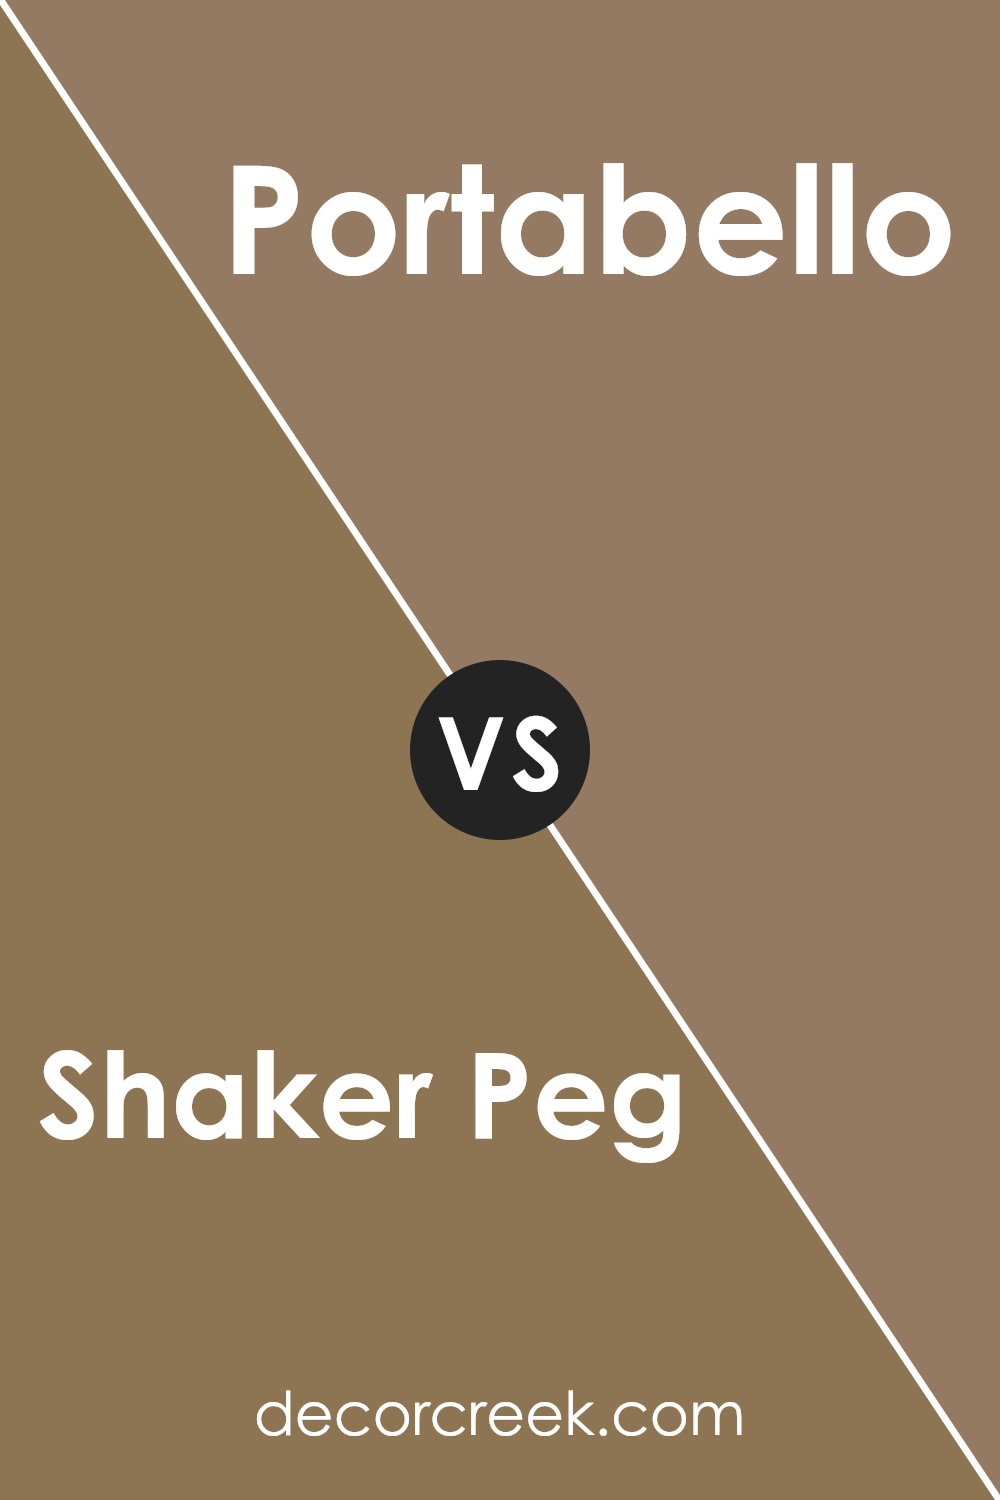 shaker_peg_sw_9539_vs_portabello_sw_6102